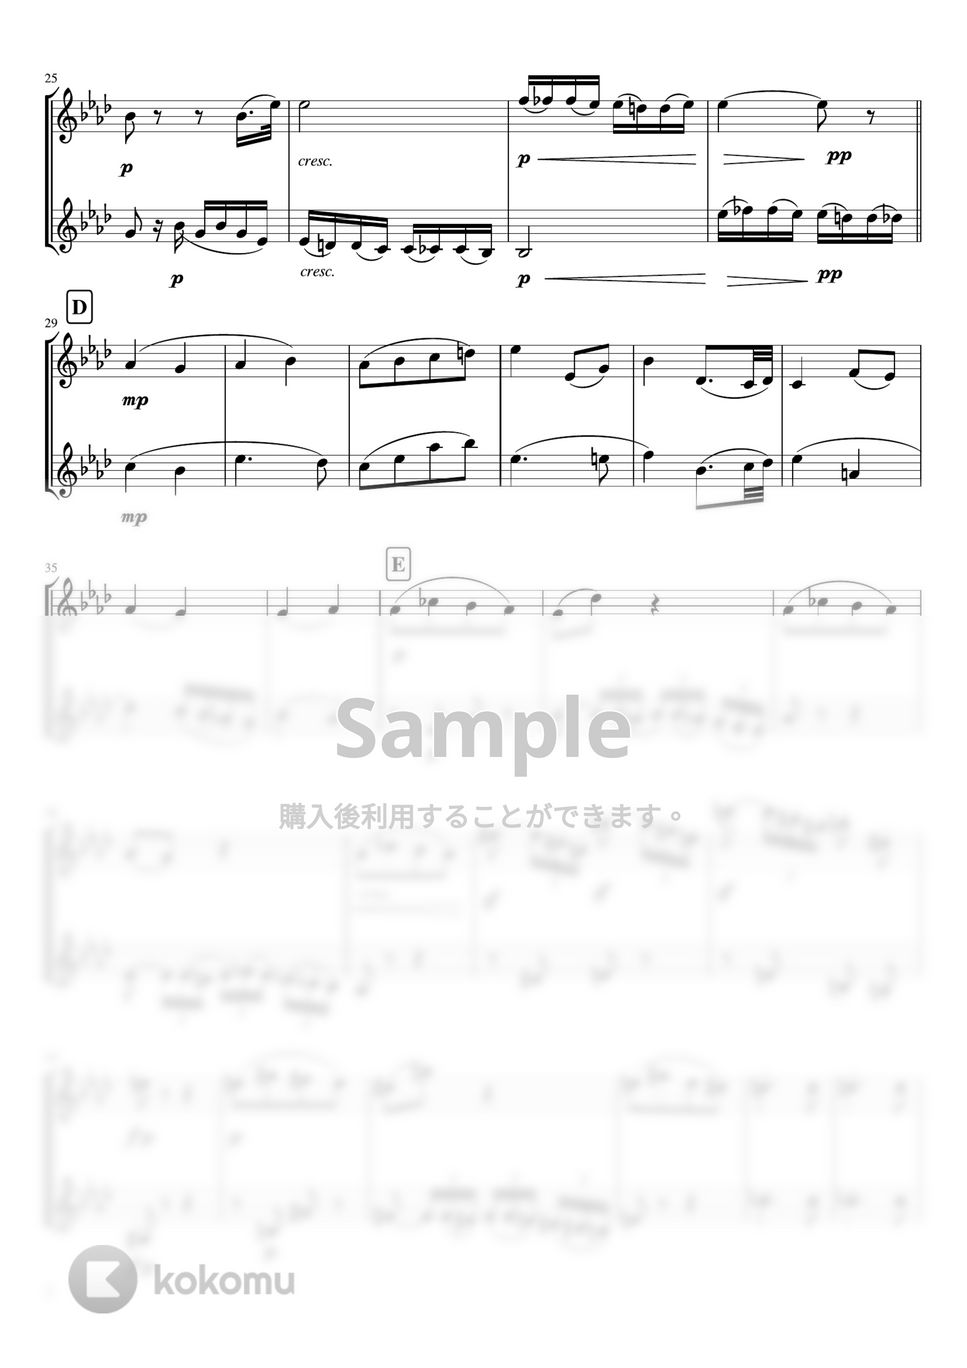 ベートーヴェン - ピアノソナタ第8番第2楽章「悲愴」 (バイオリン二重奏 ・無伴奏/スコア) by pfkaori